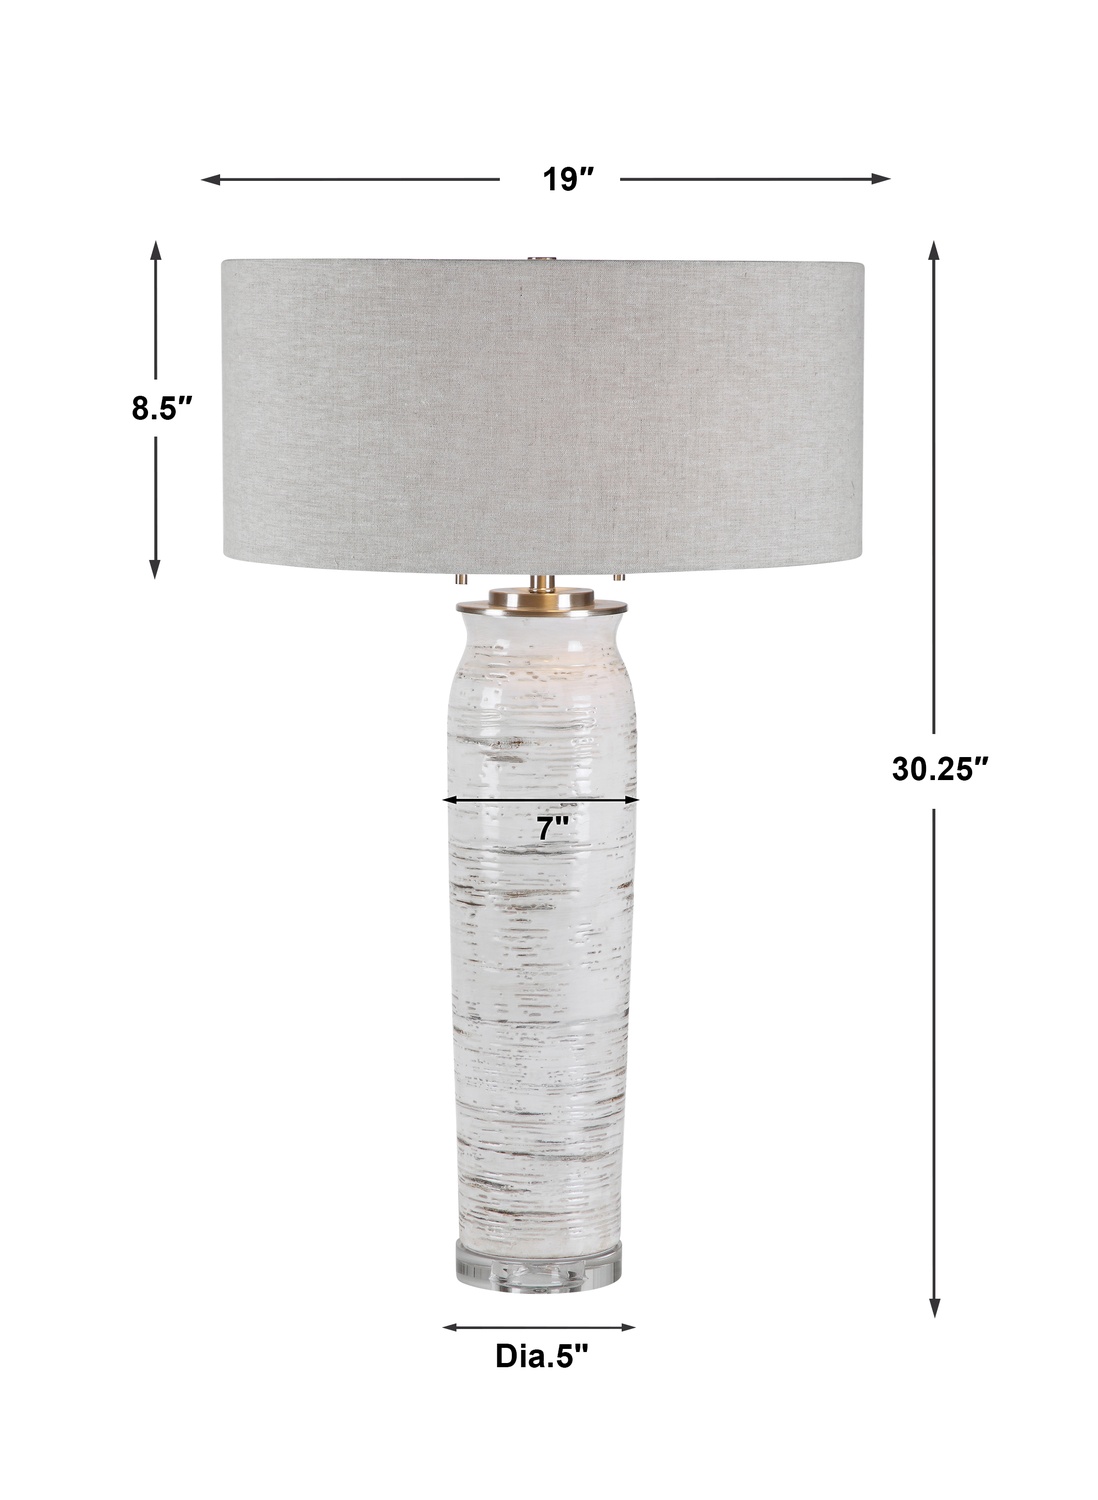 Lenta-White Table Lamp